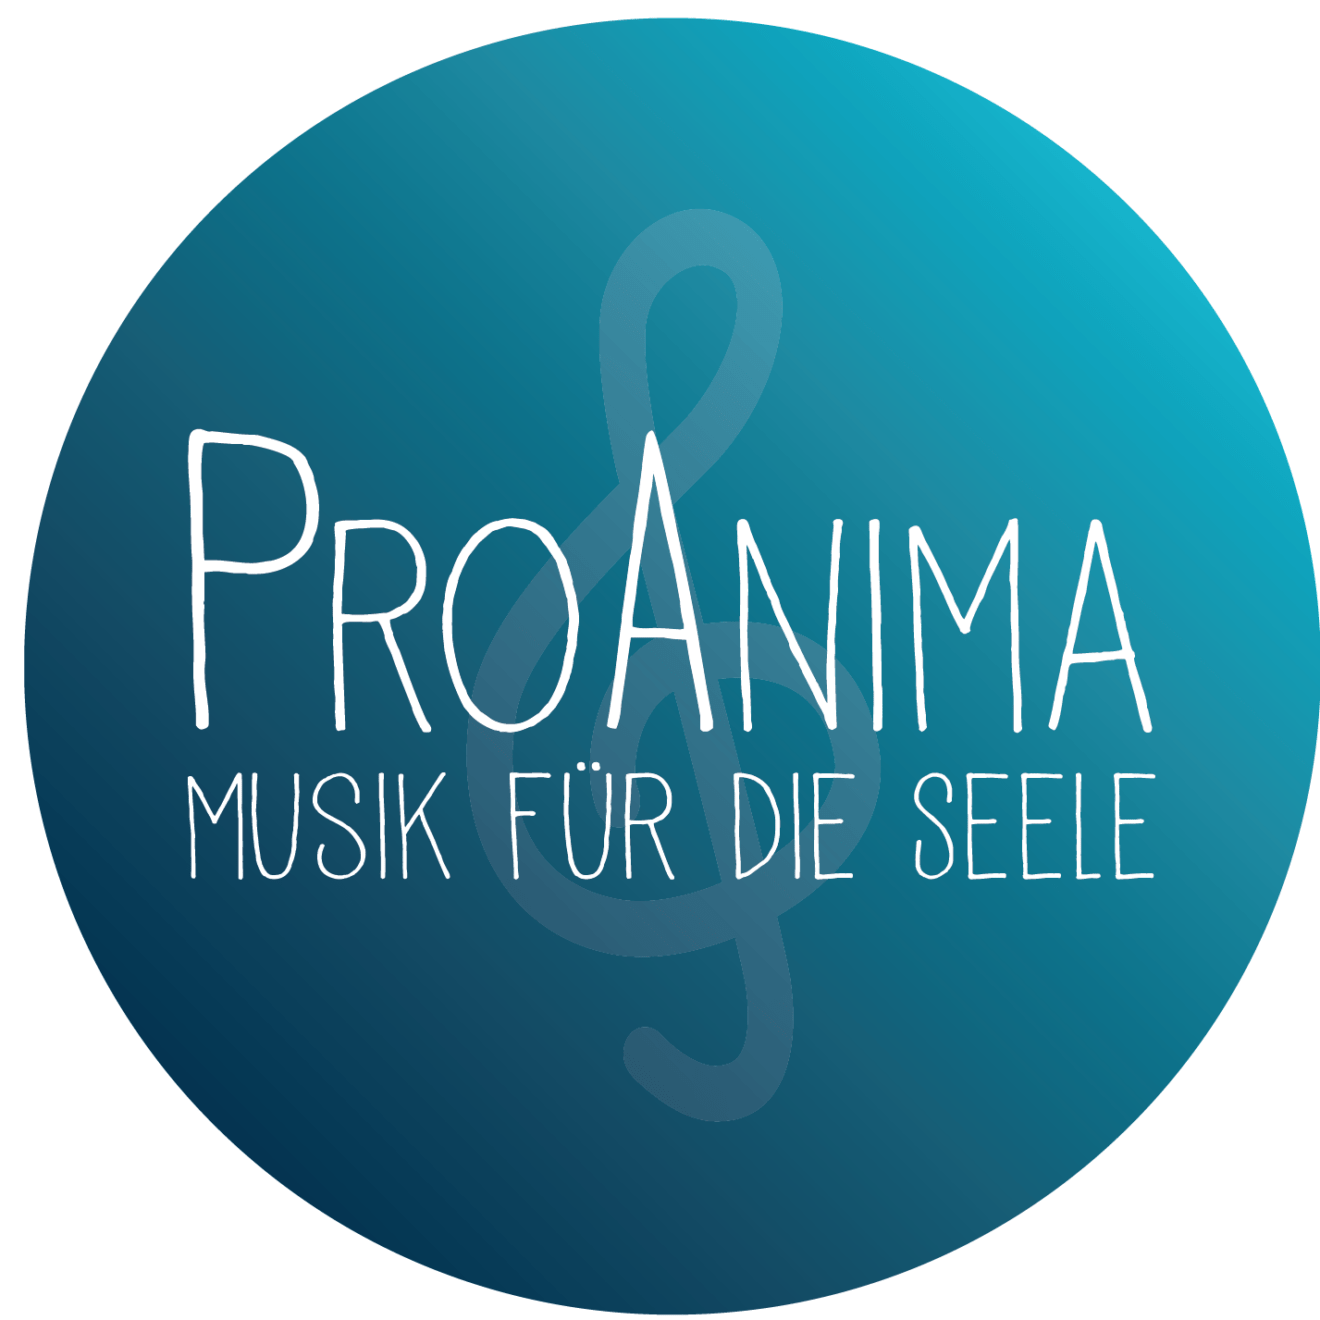 Band ProAnima - Musik für die Seele - gestaltet die Vorabmesse am kommenden Samstag in Lachen-Speyerdorf